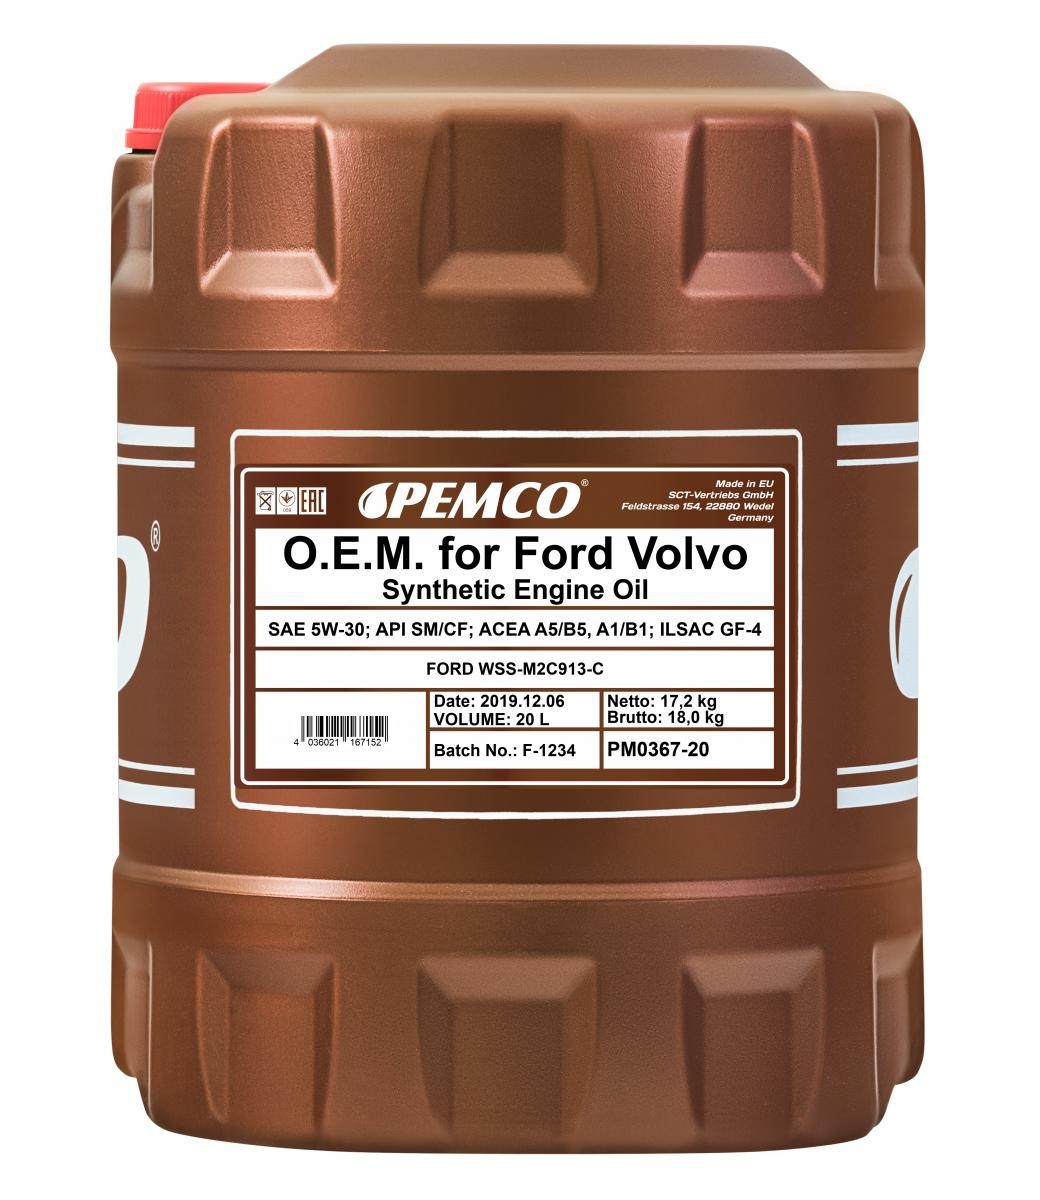 PM0367-20 PEMCO Olio LAND ROVER 5W-30, 20l, Olio sintetico